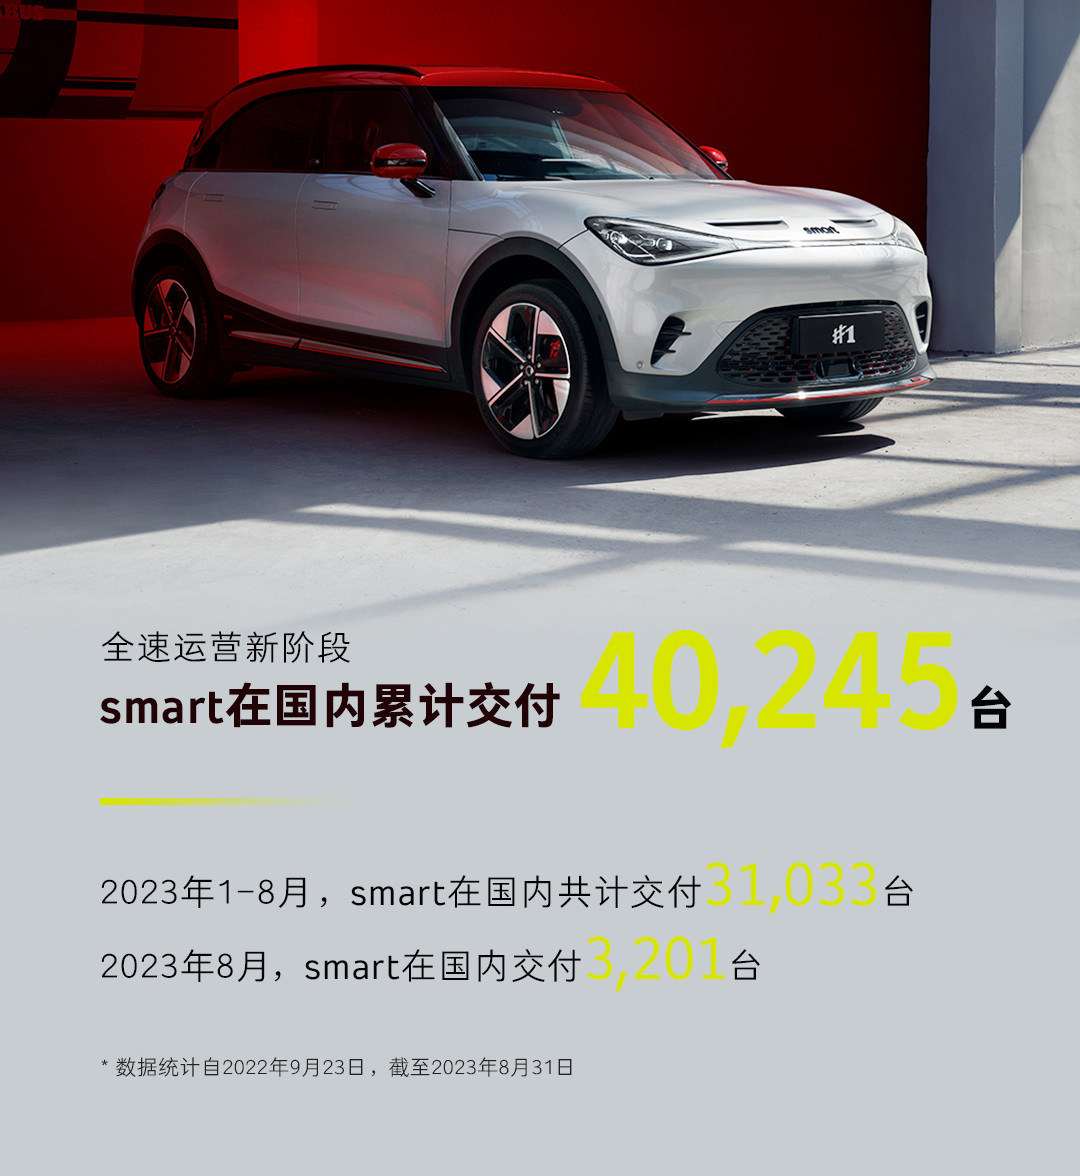 smart汽车8月交付3201台今年累计交付31033台